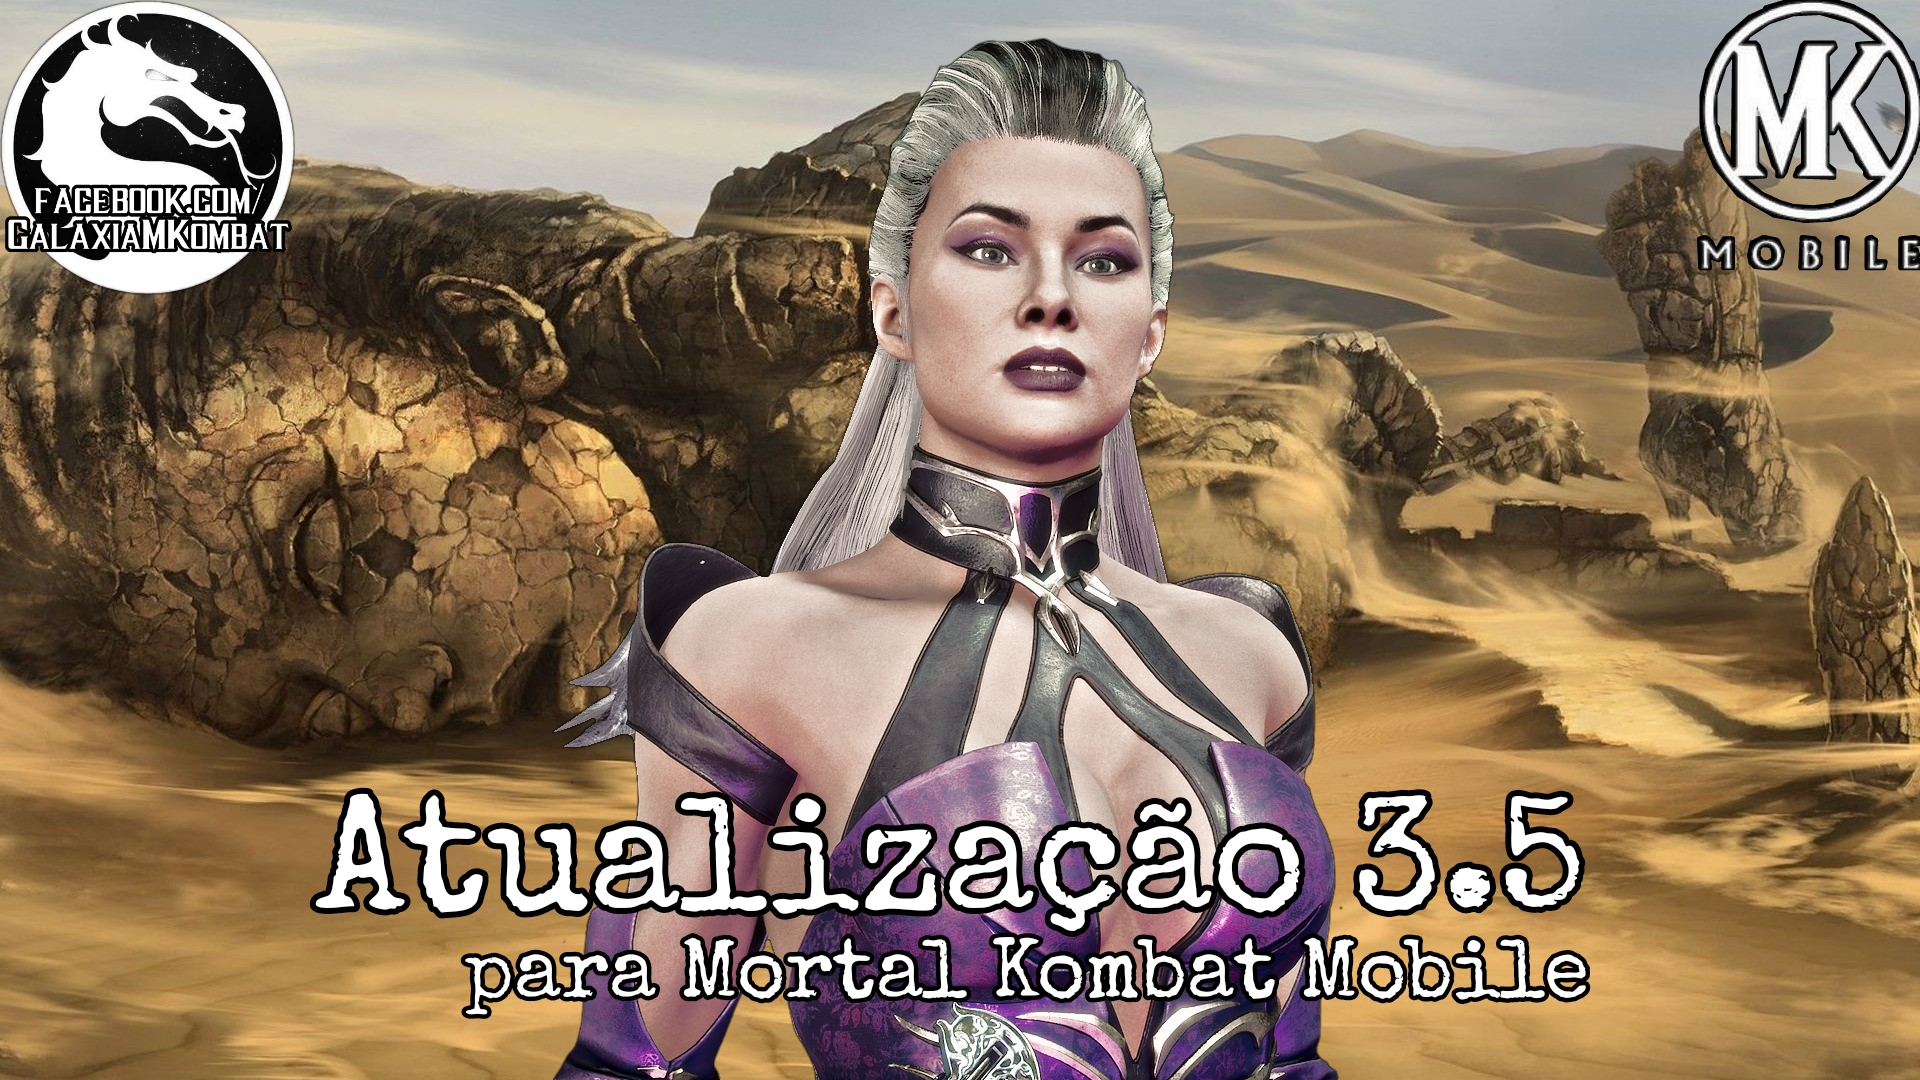 Galáxia Mortal Kombat - Saiba mais: Kintaro Para muitos leigos, o